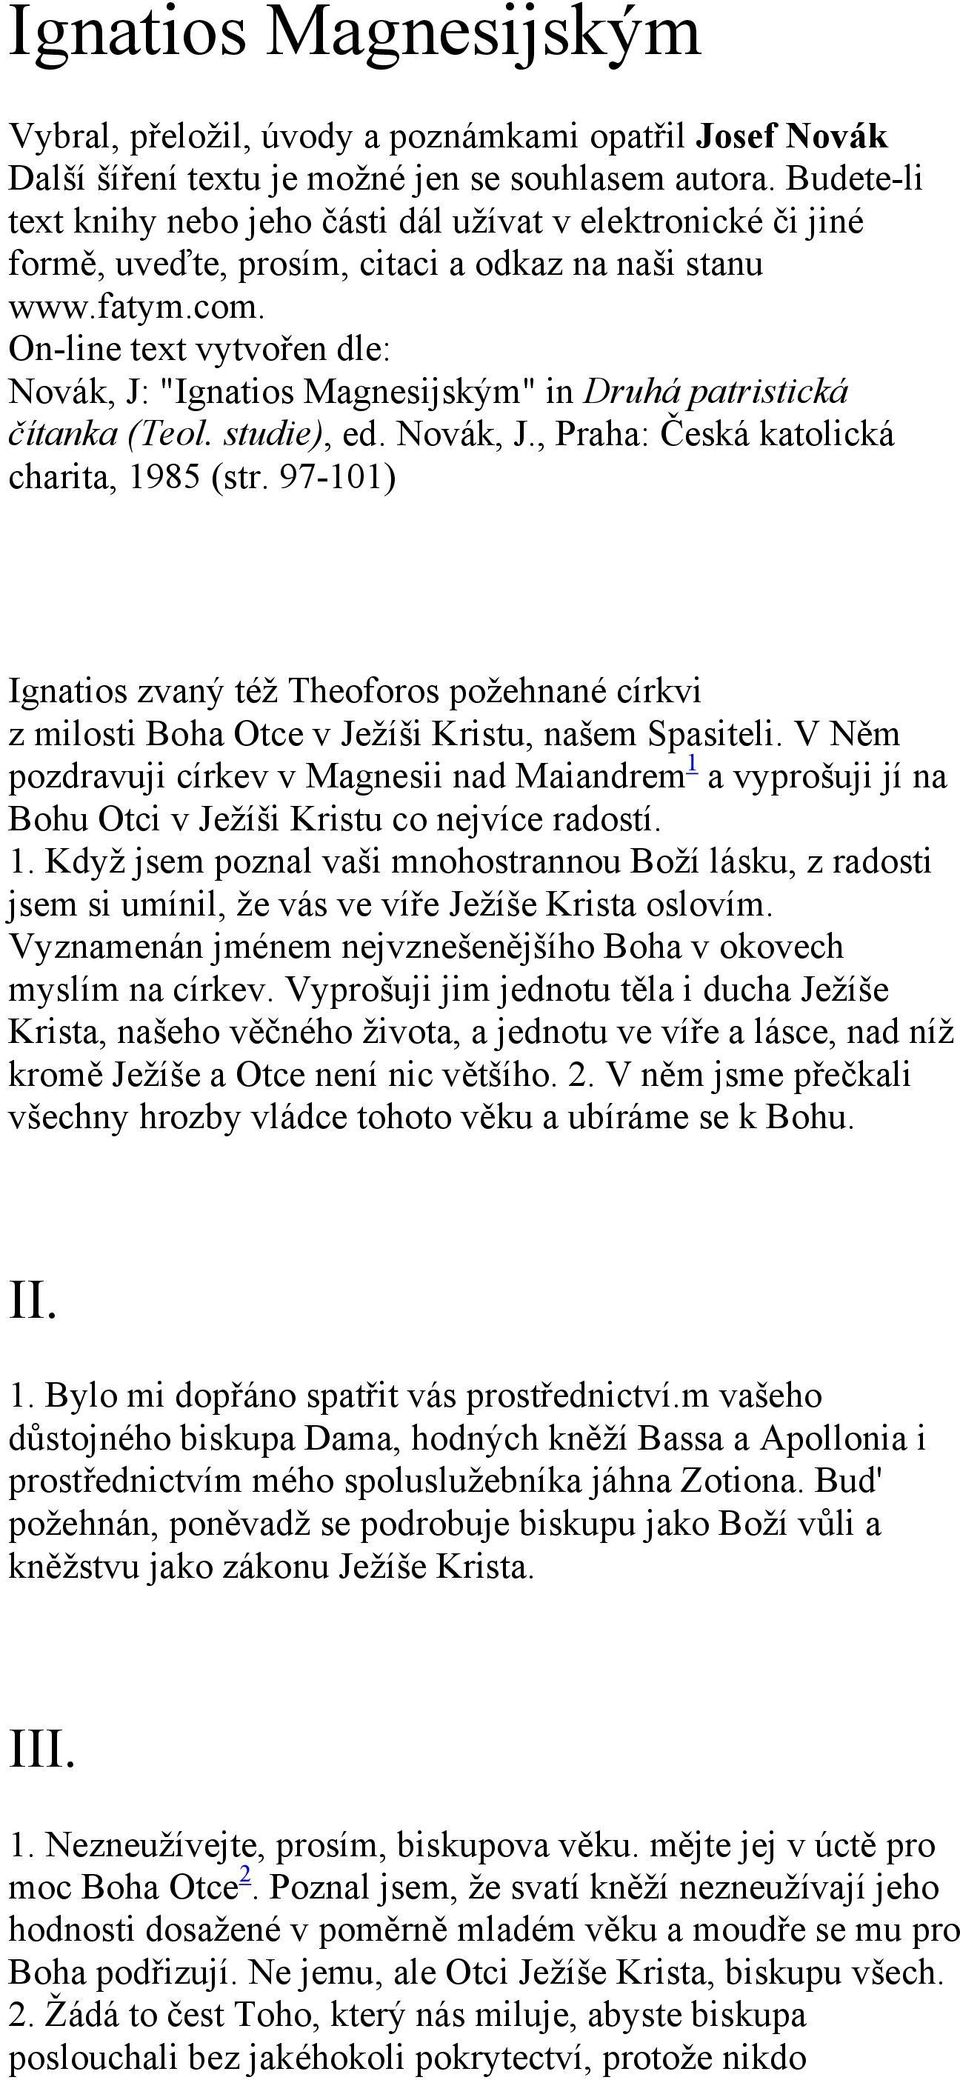 On-line text vytvořen dle: Novák, J: "Ignatios Magnesijským" in Druhá patristická čítanka (Teol. studie), ed. Novák, J., Praha: Česká katolická charita, 1985 (str.